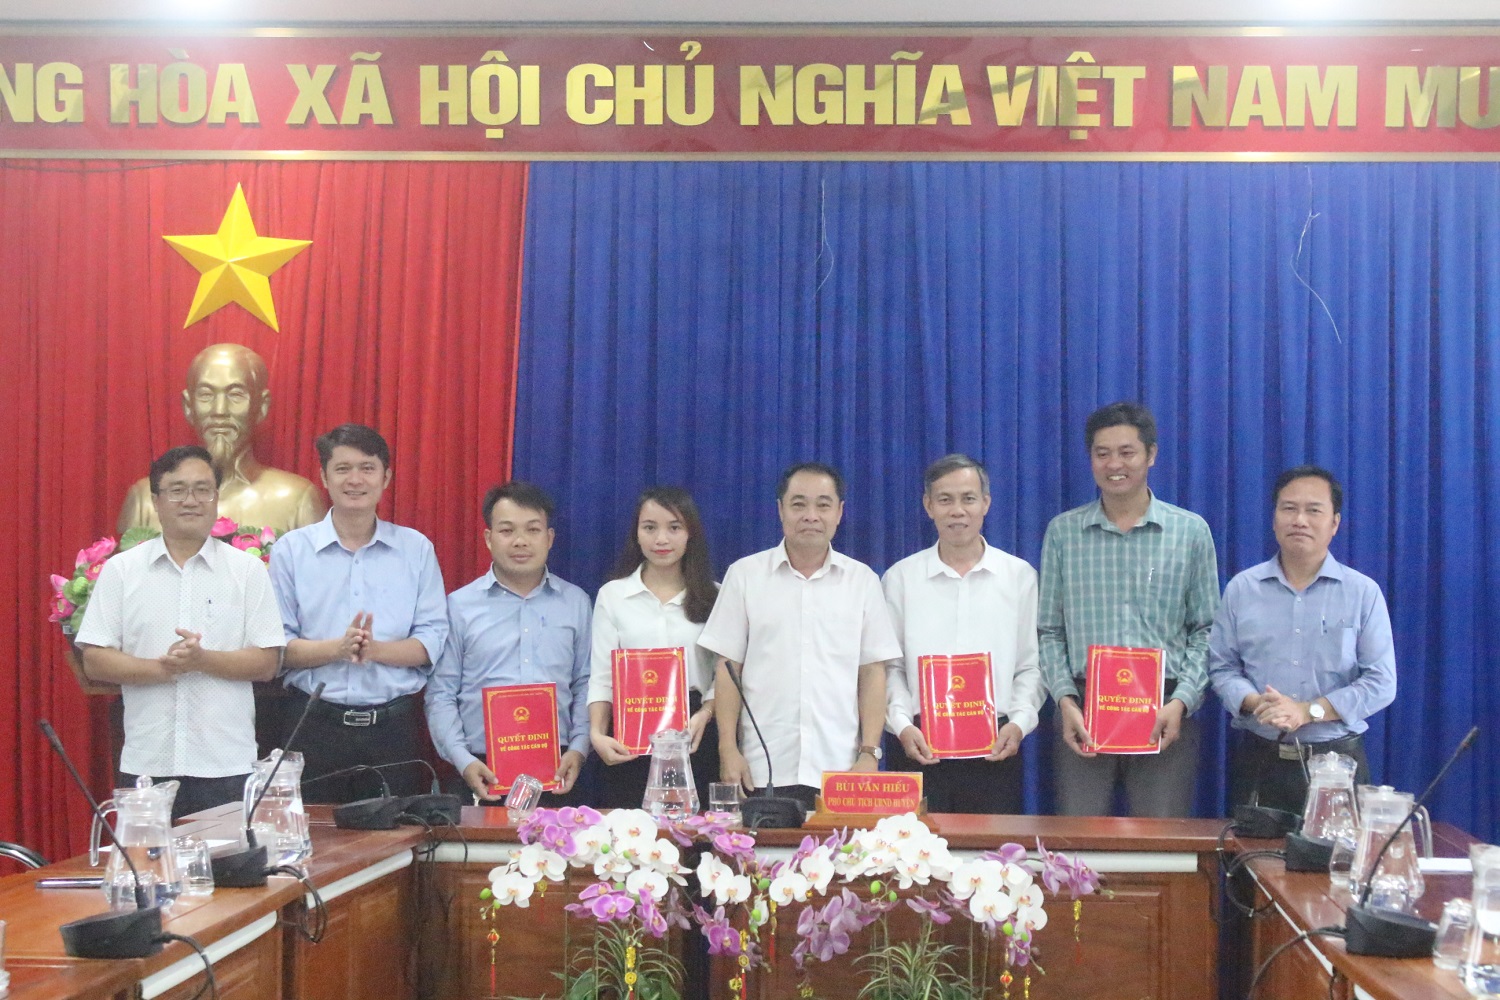 Huyện Phú Riềng trao quyết định tiếp nhận vào công chức và chuyển ngạch lương tương đương.